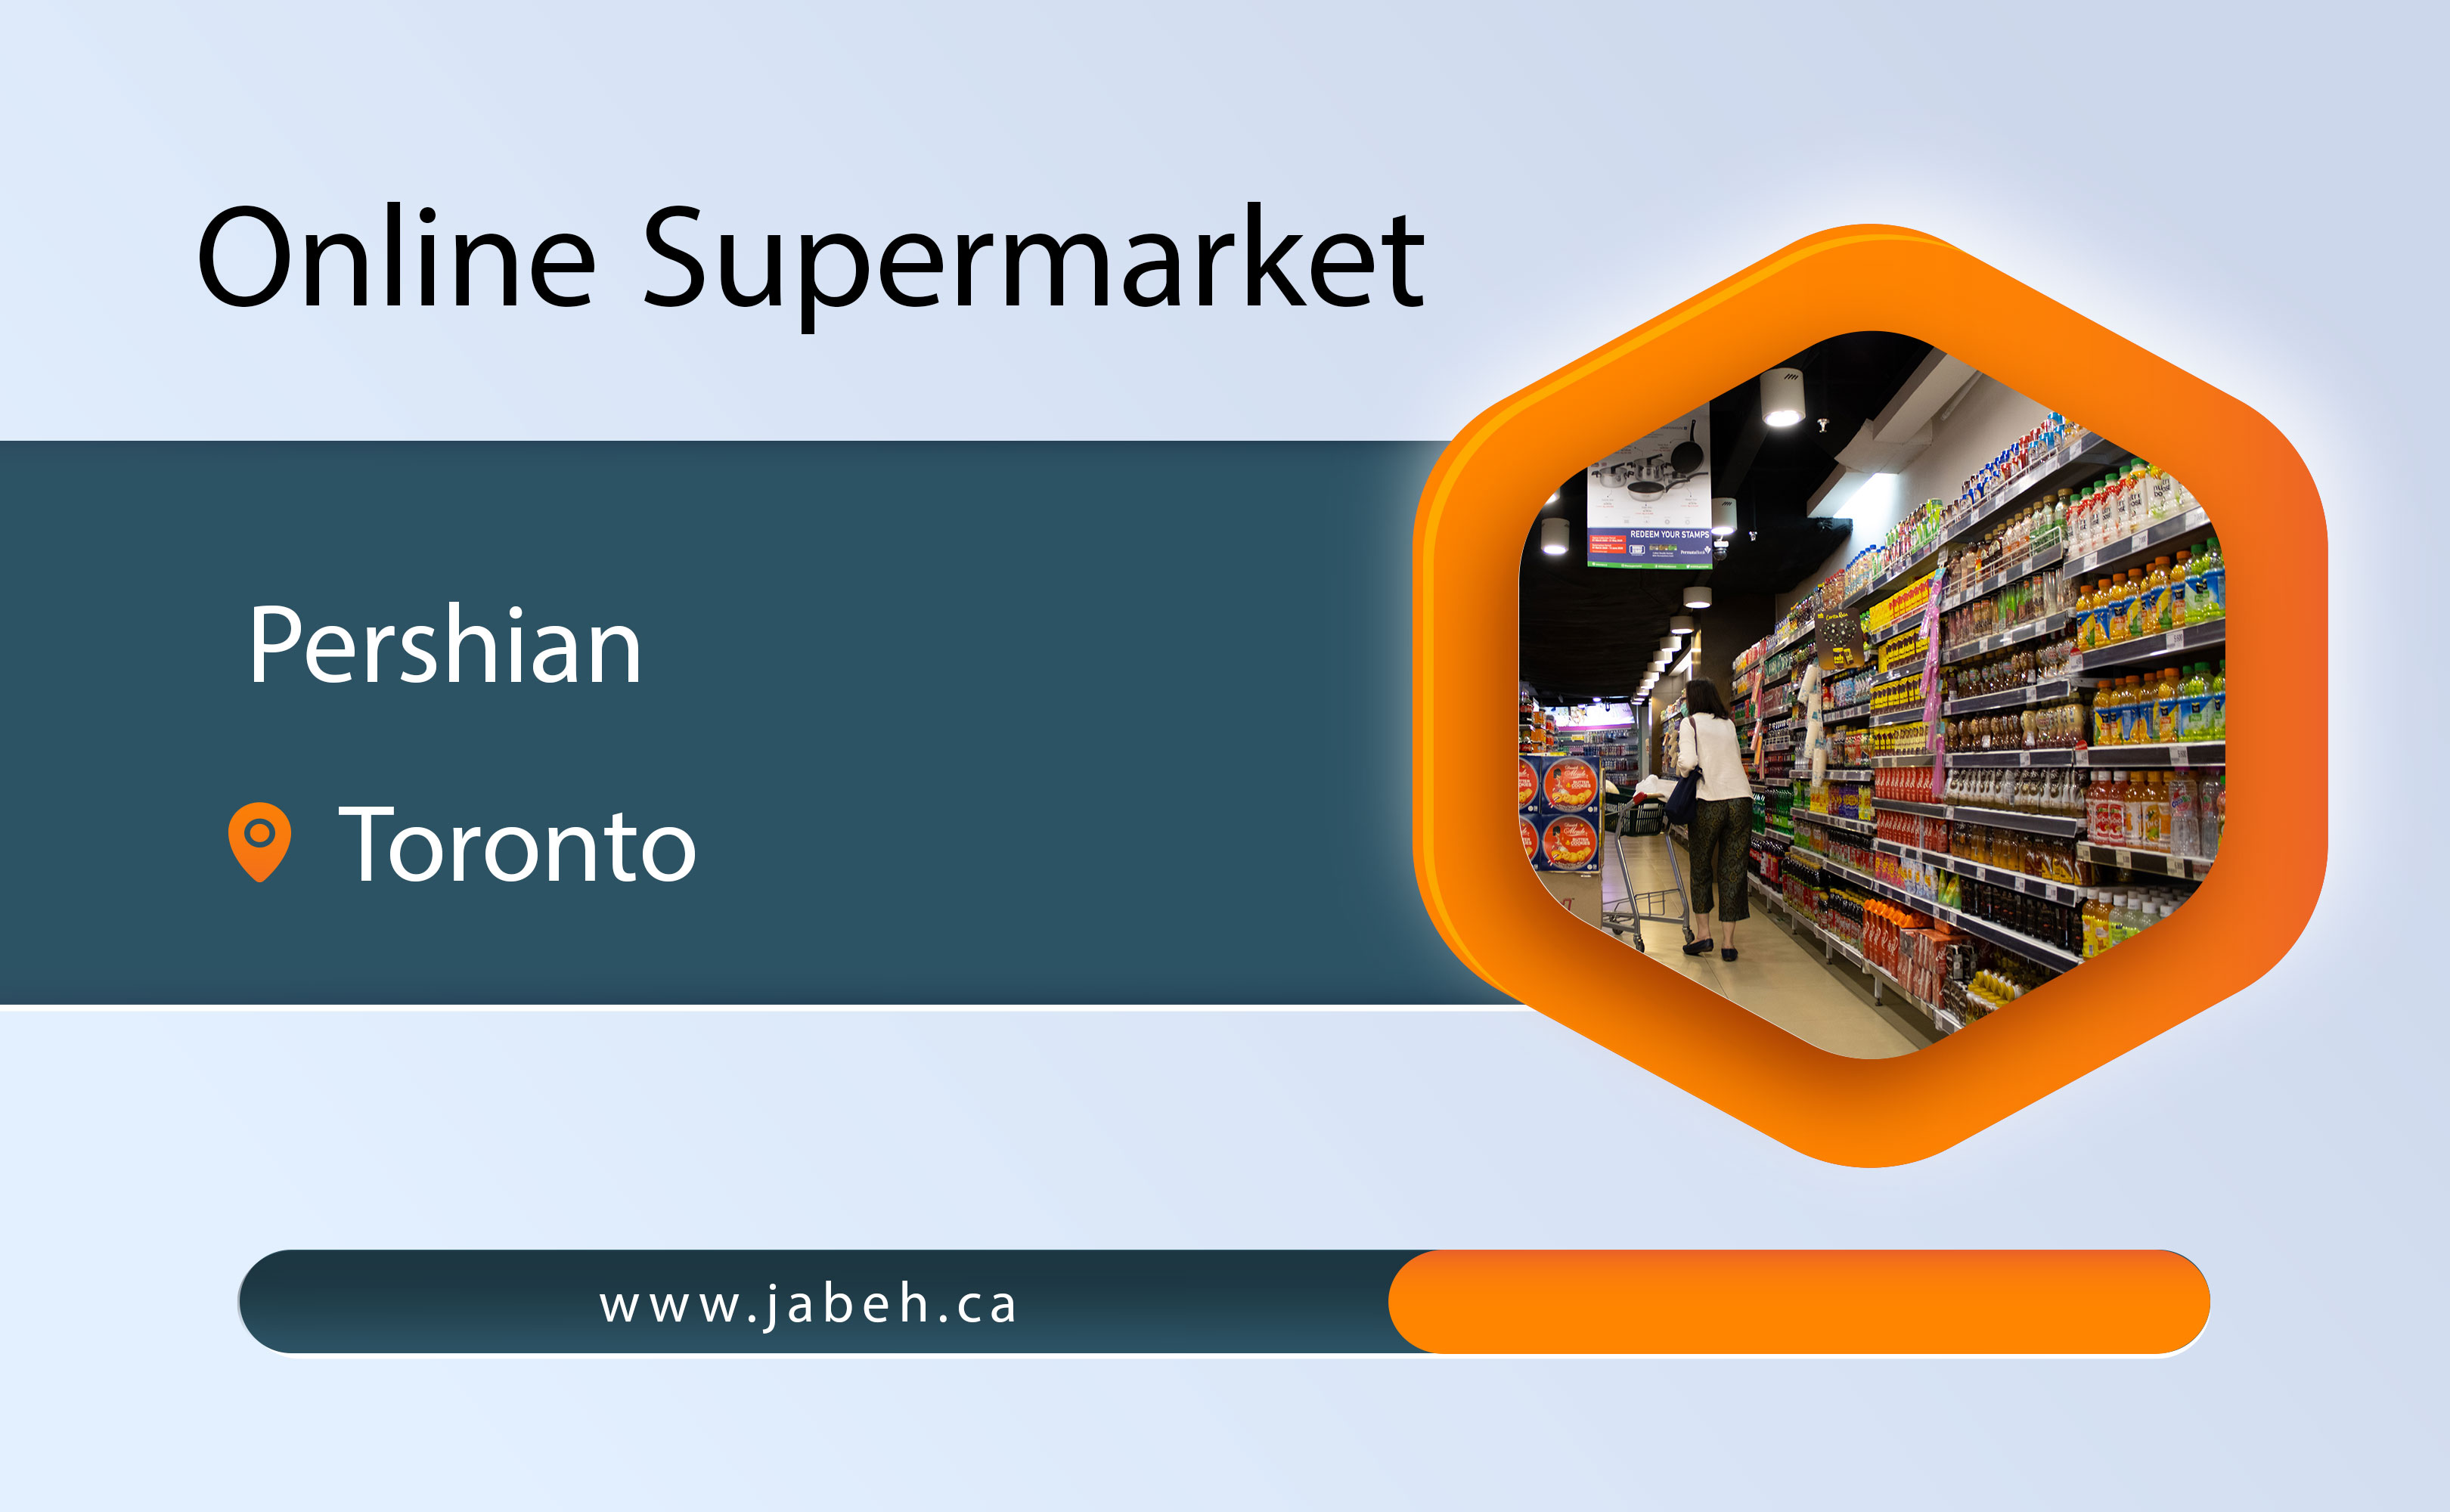 Persian online supermarket in Toronto